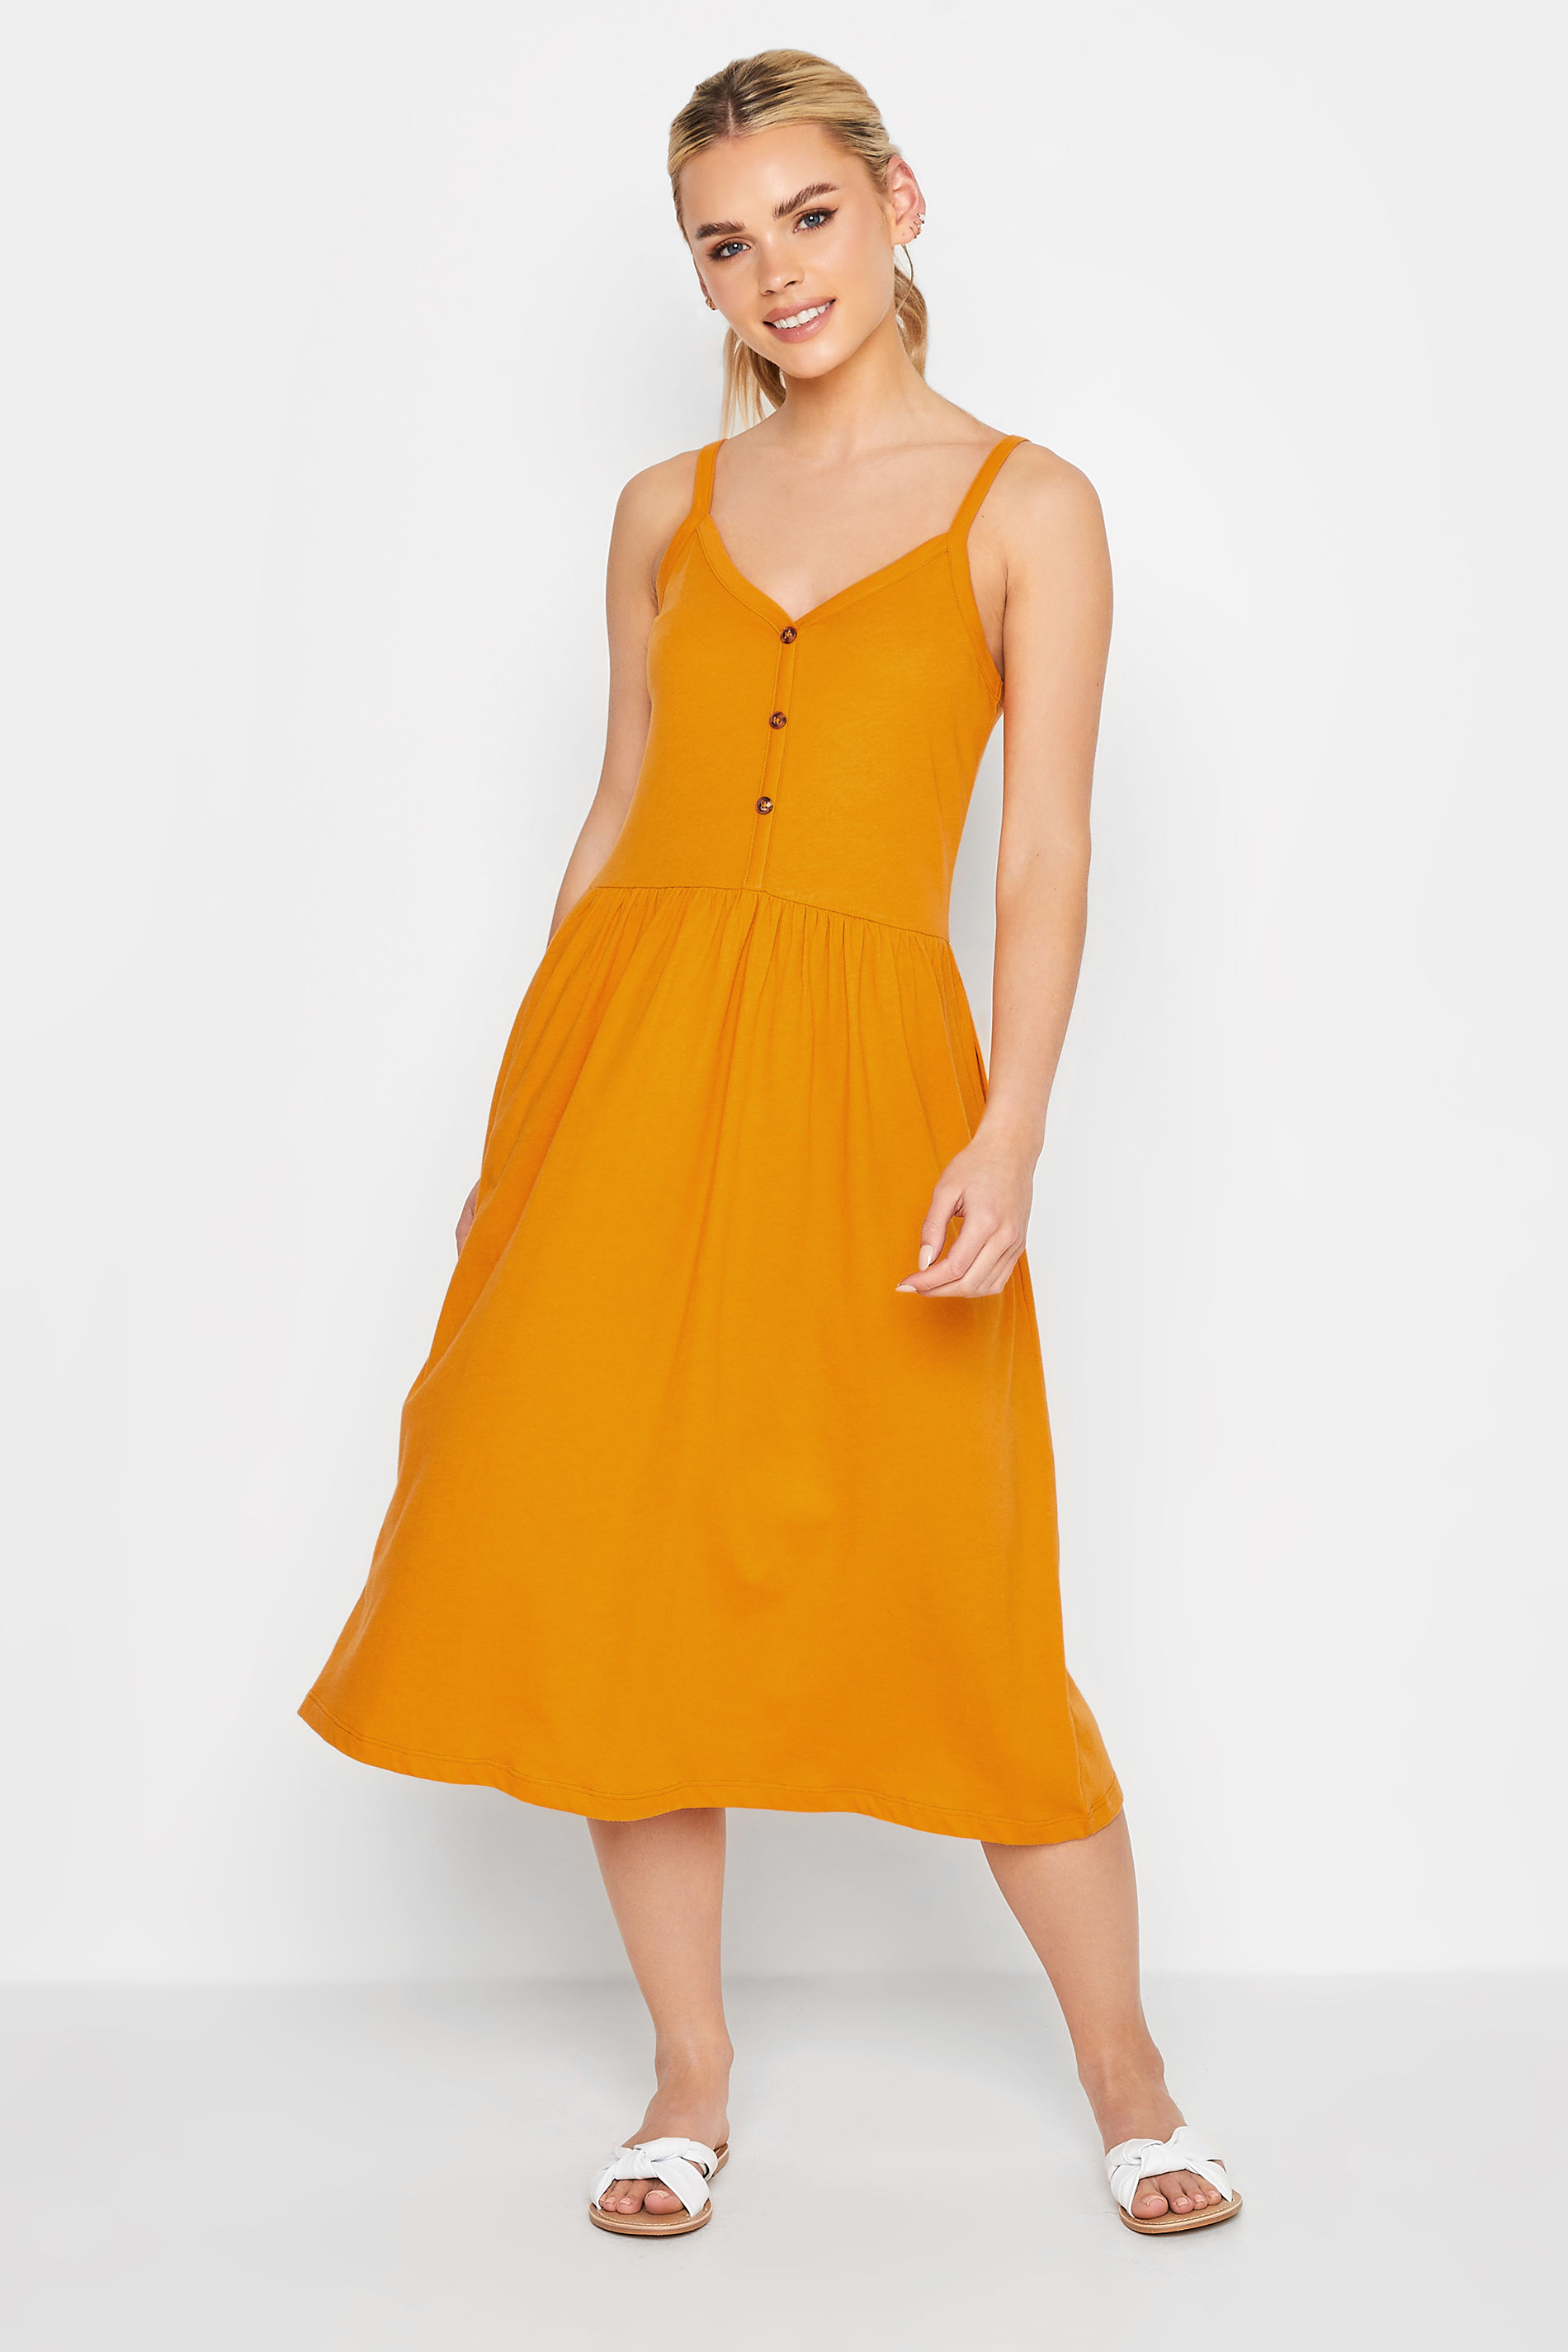 PixieGirl Yellow Button Through Midi Dress | PixieGirl 1